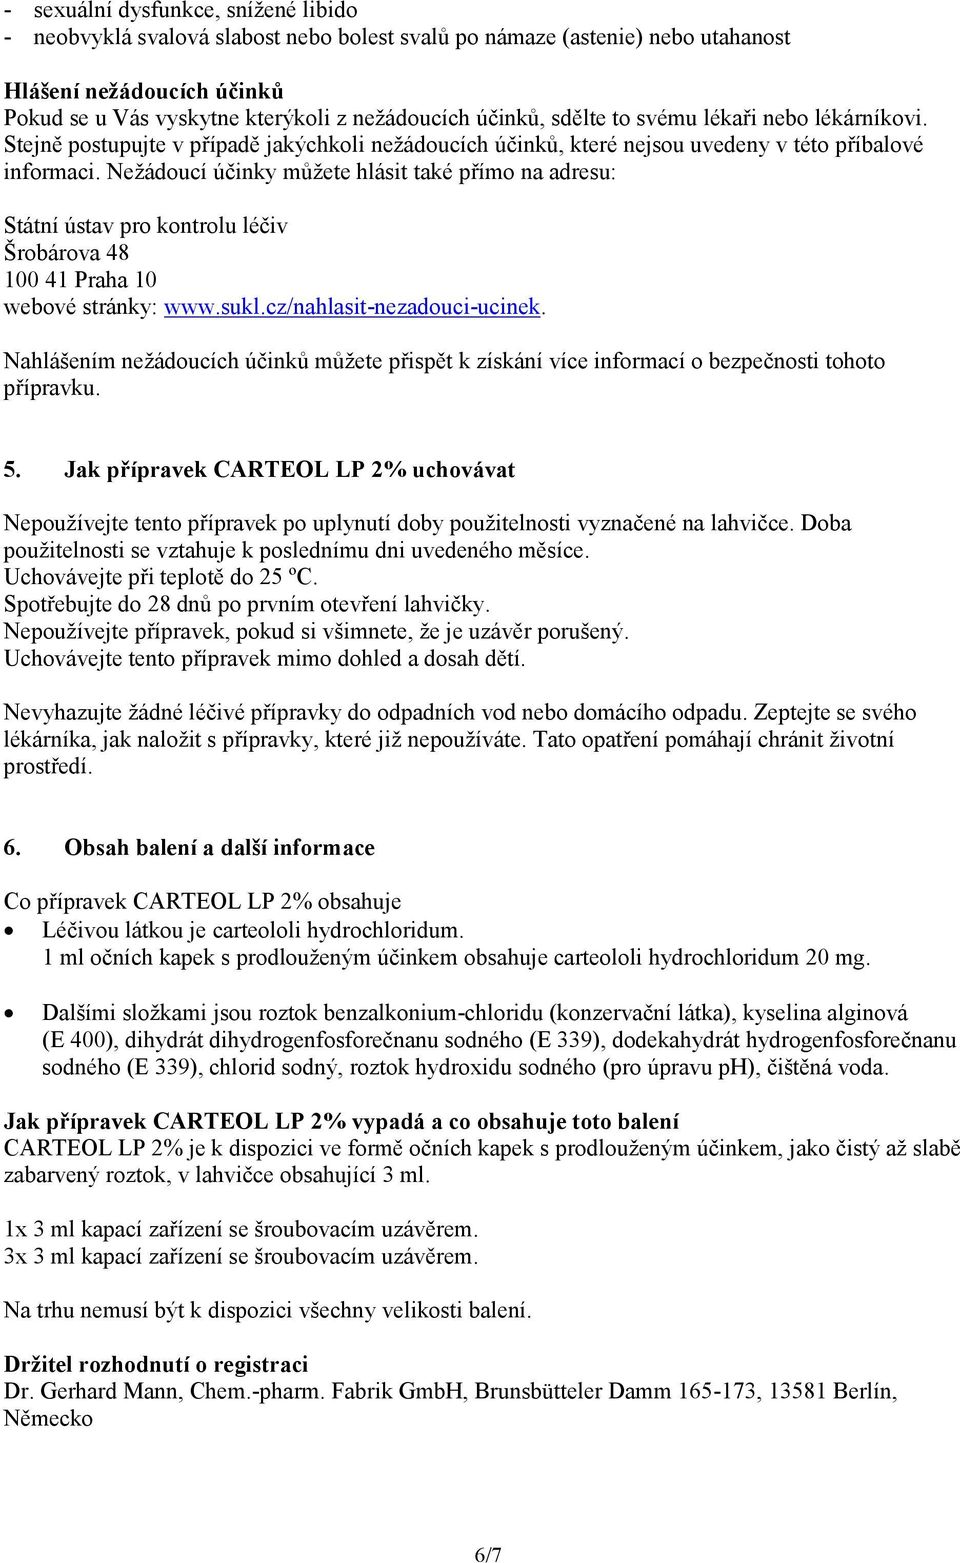 Nežádoucí účinky můžete hlásit také přímo na adresu: Státní ústav pro kontrolu léčiv Šrobárova 48 100 41 Praha 10 webové stránky: www.sukl.cz/nahlasit-nezadouci-ucinek.